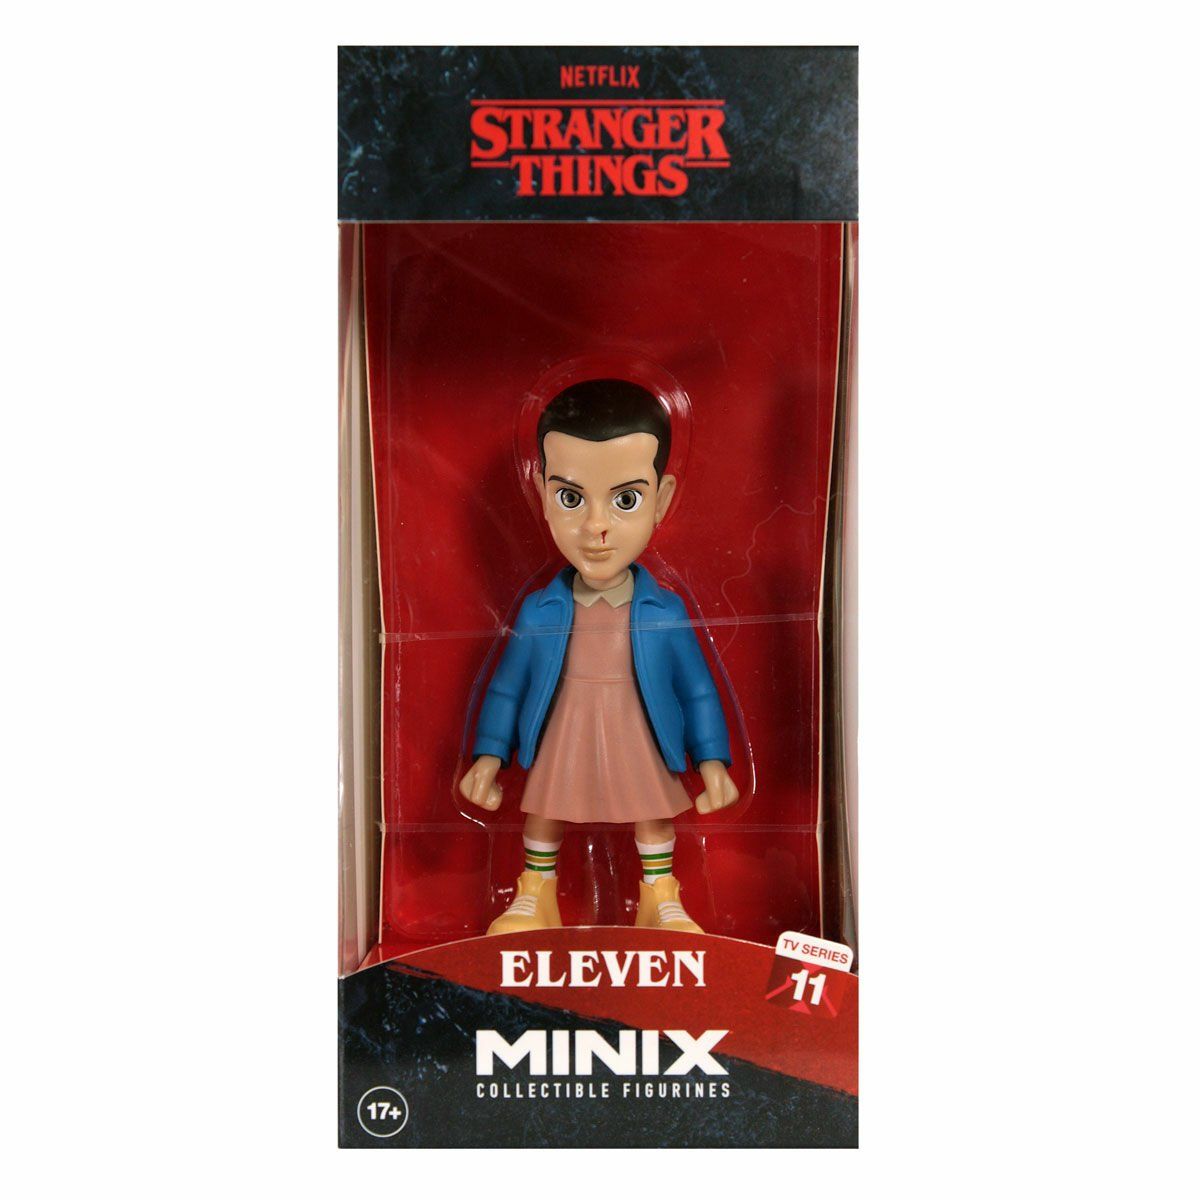 MNX08000 Minix Koleksiyon Figürü Eleven - Stranger Things - 13869